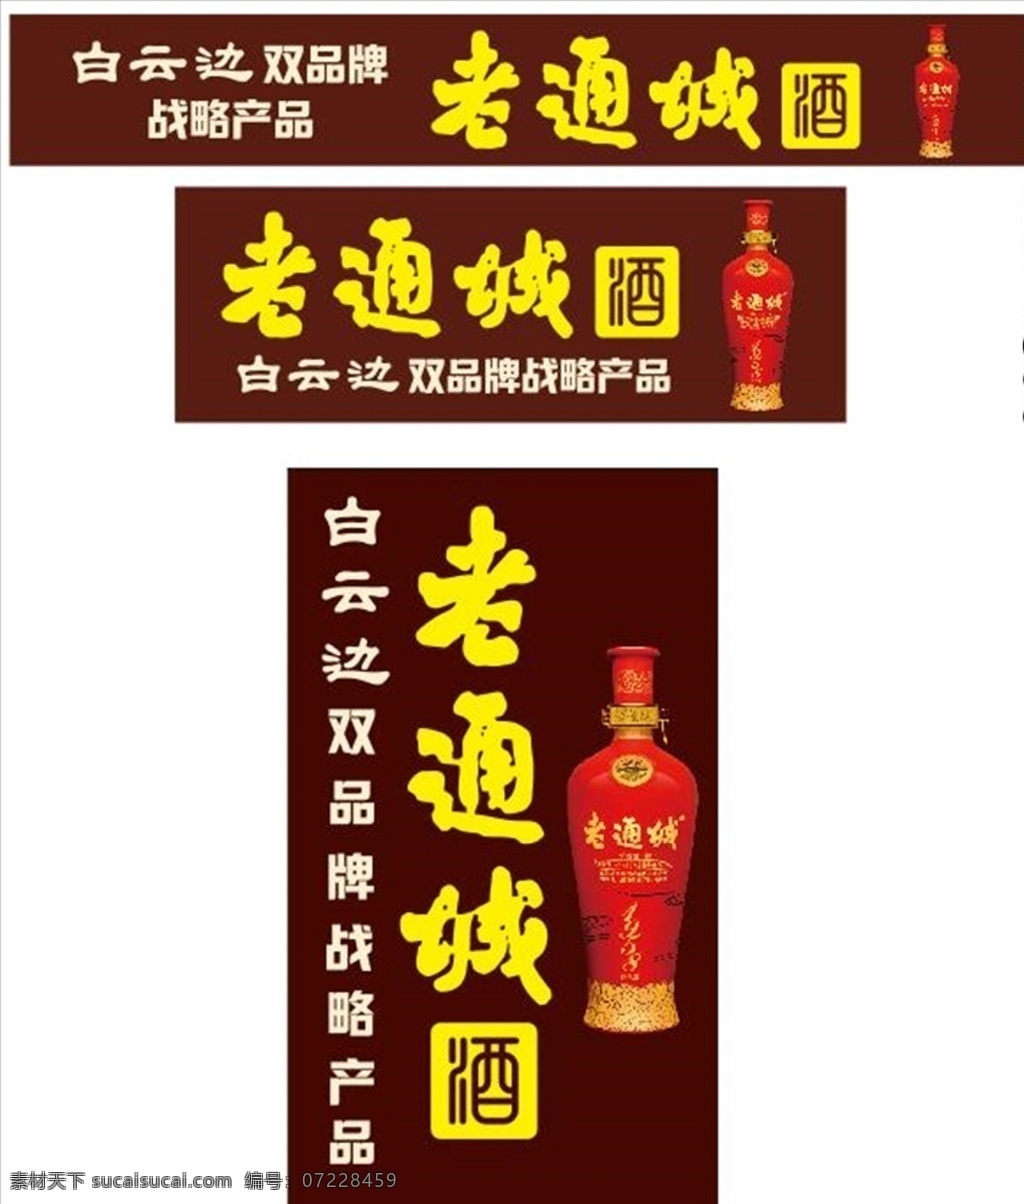 老 通城 酒 标准 版式 老通城酒 标准版式 广告招牌 广告海报